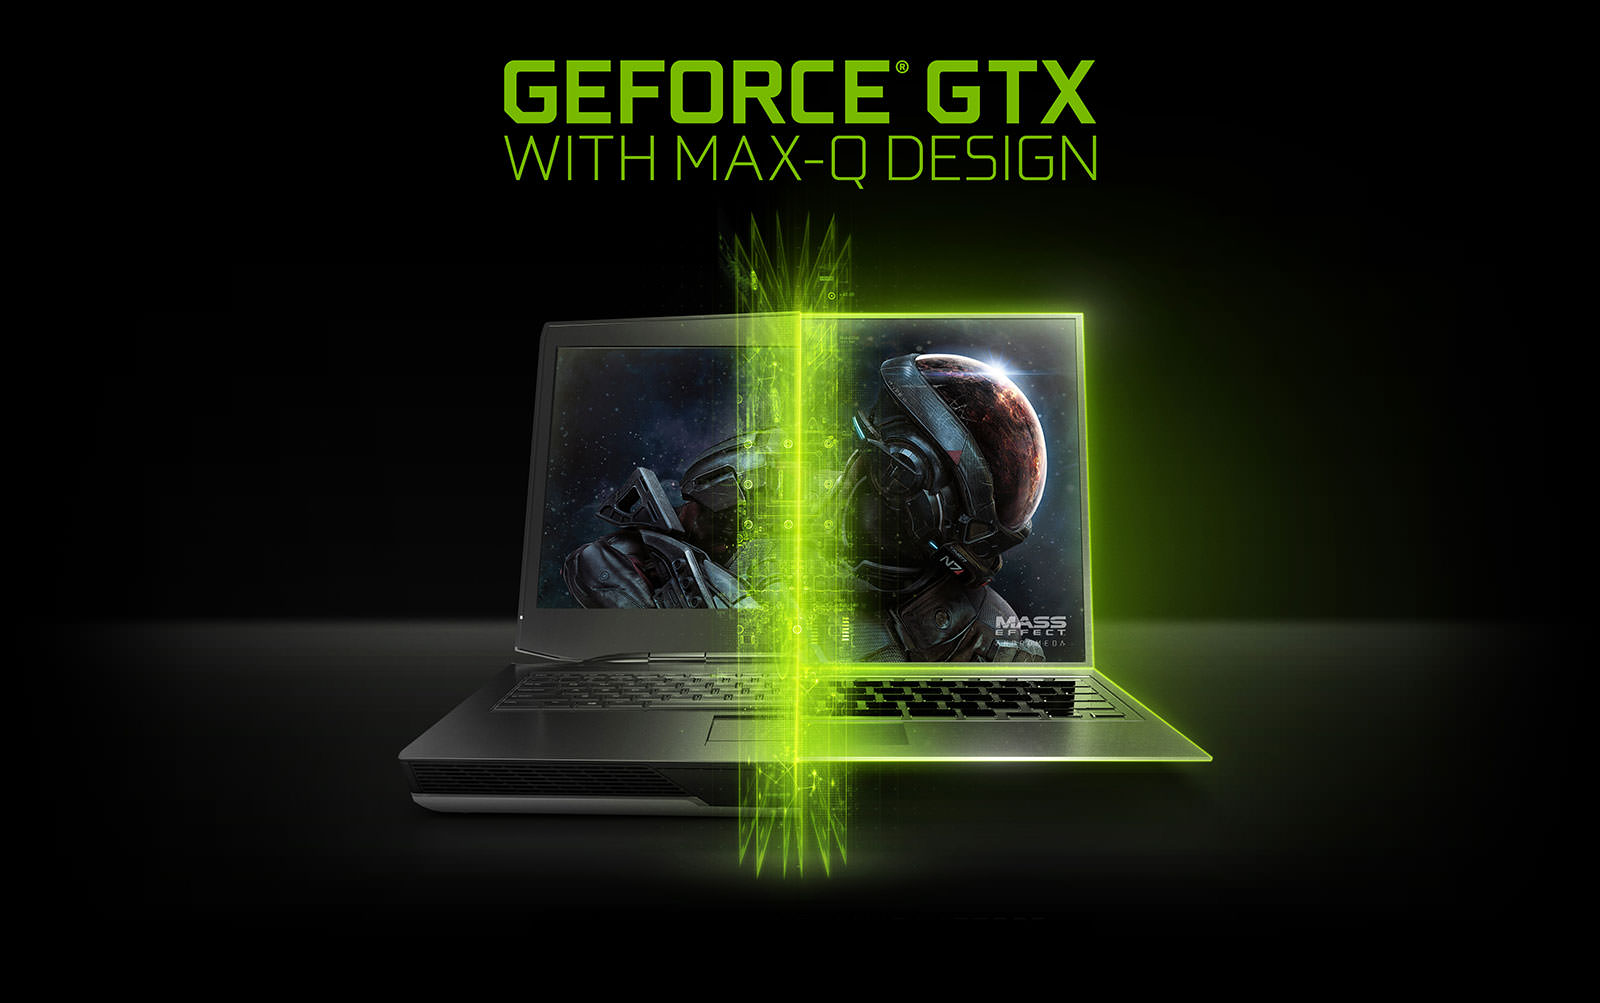 Nvidia Max-Q design